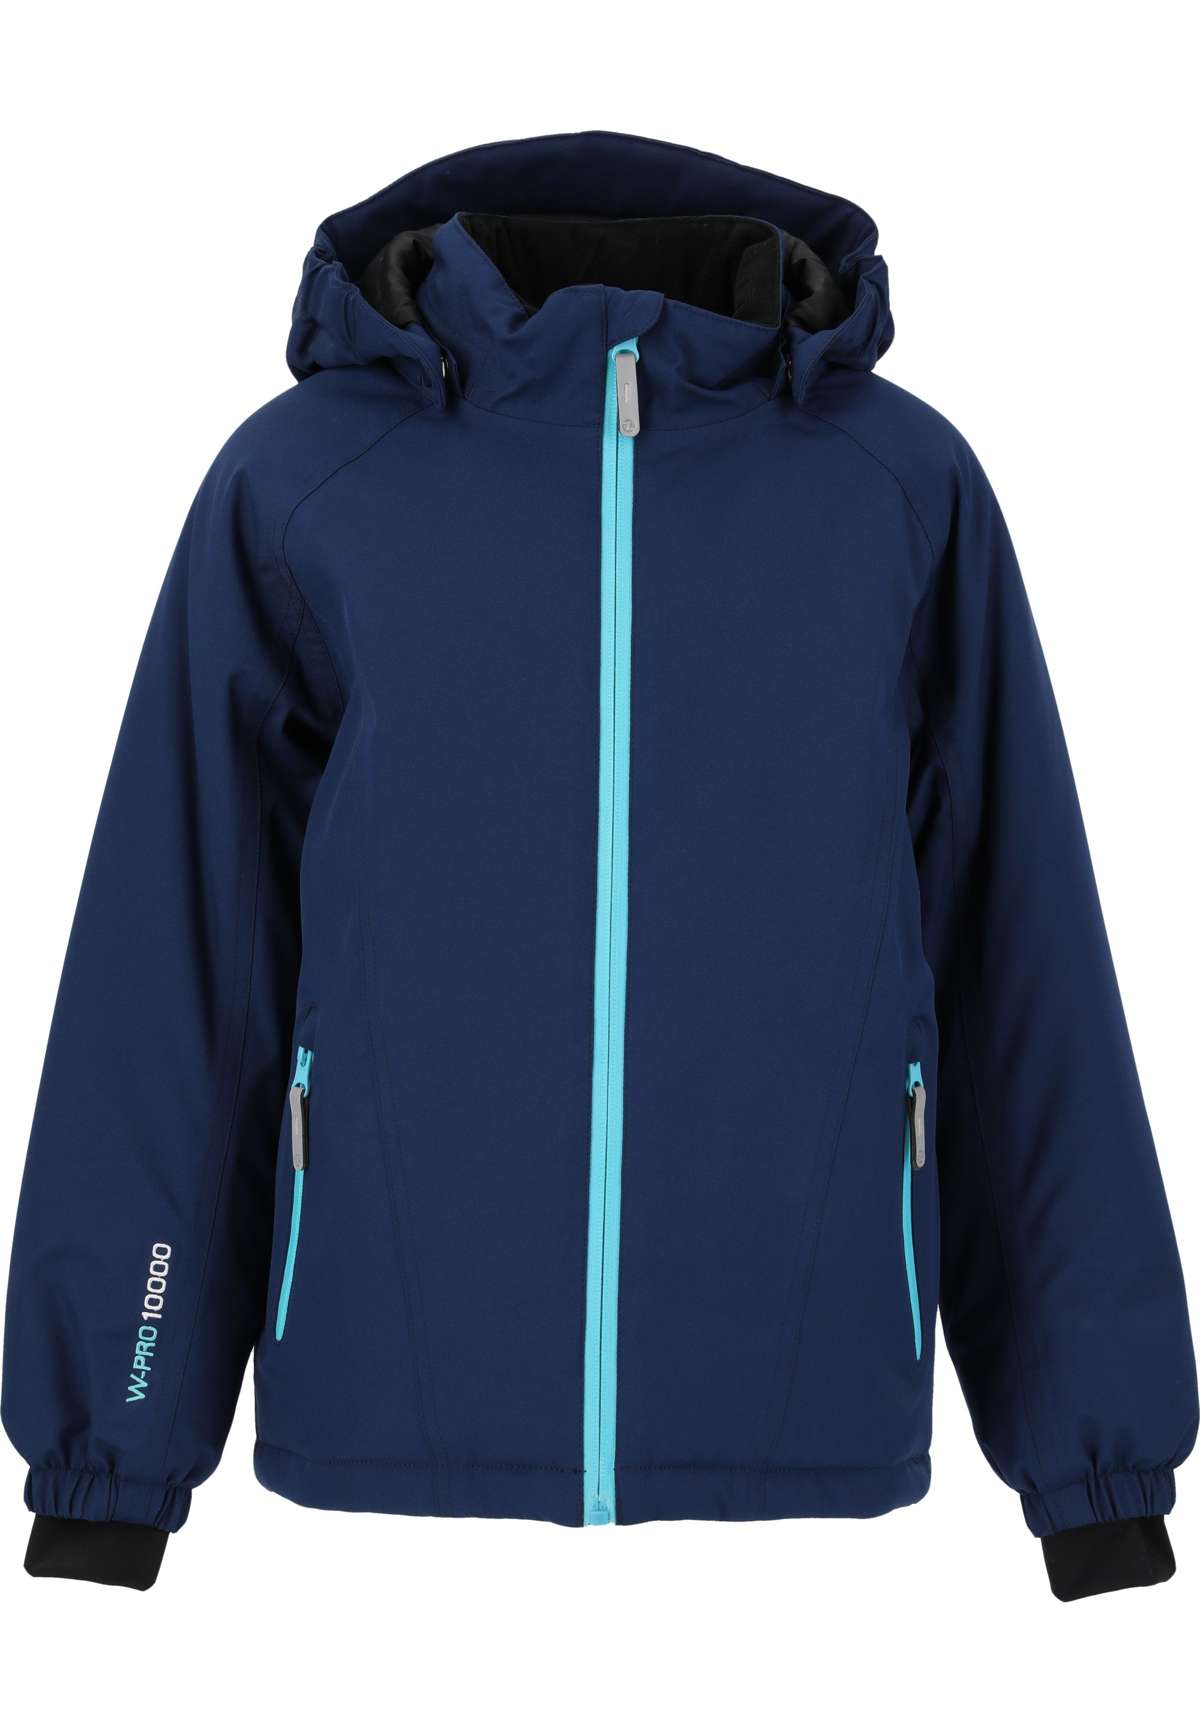 Лыжная куртка с водонепроницаемыми и ветрозащитными свойствами.